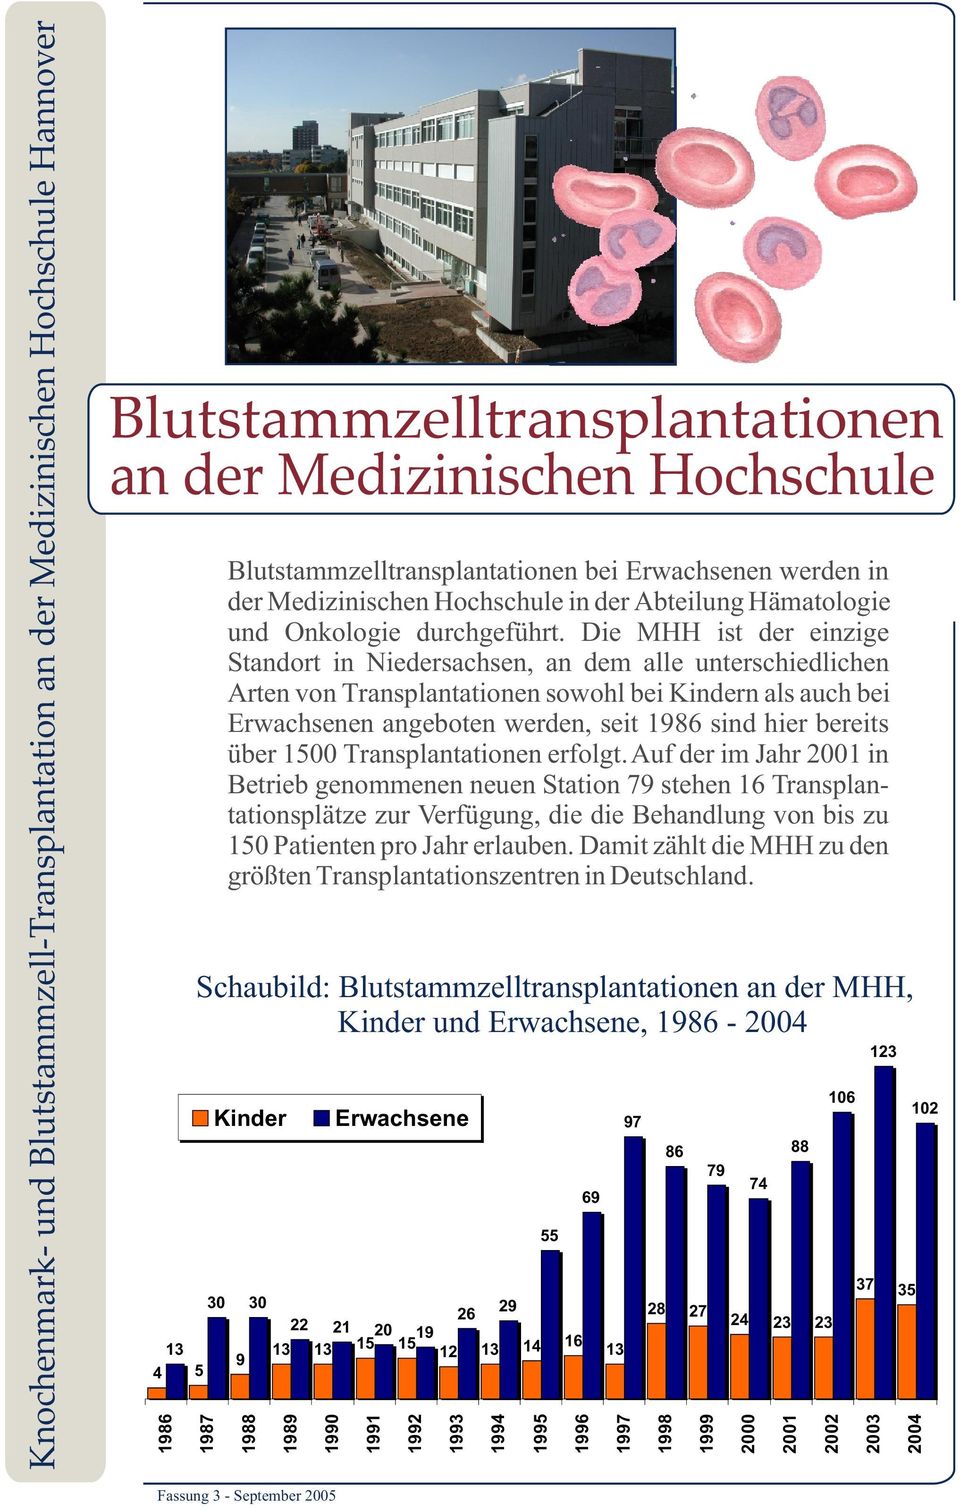 Die MHH ist der einzige Standort in Niedersachsen, an dem alle unterschiedlichen Arten von Transplantationen sowohl bei Kindern als auch bei Erwachsenen angeboten werden, seit 1986 sind hier bereits